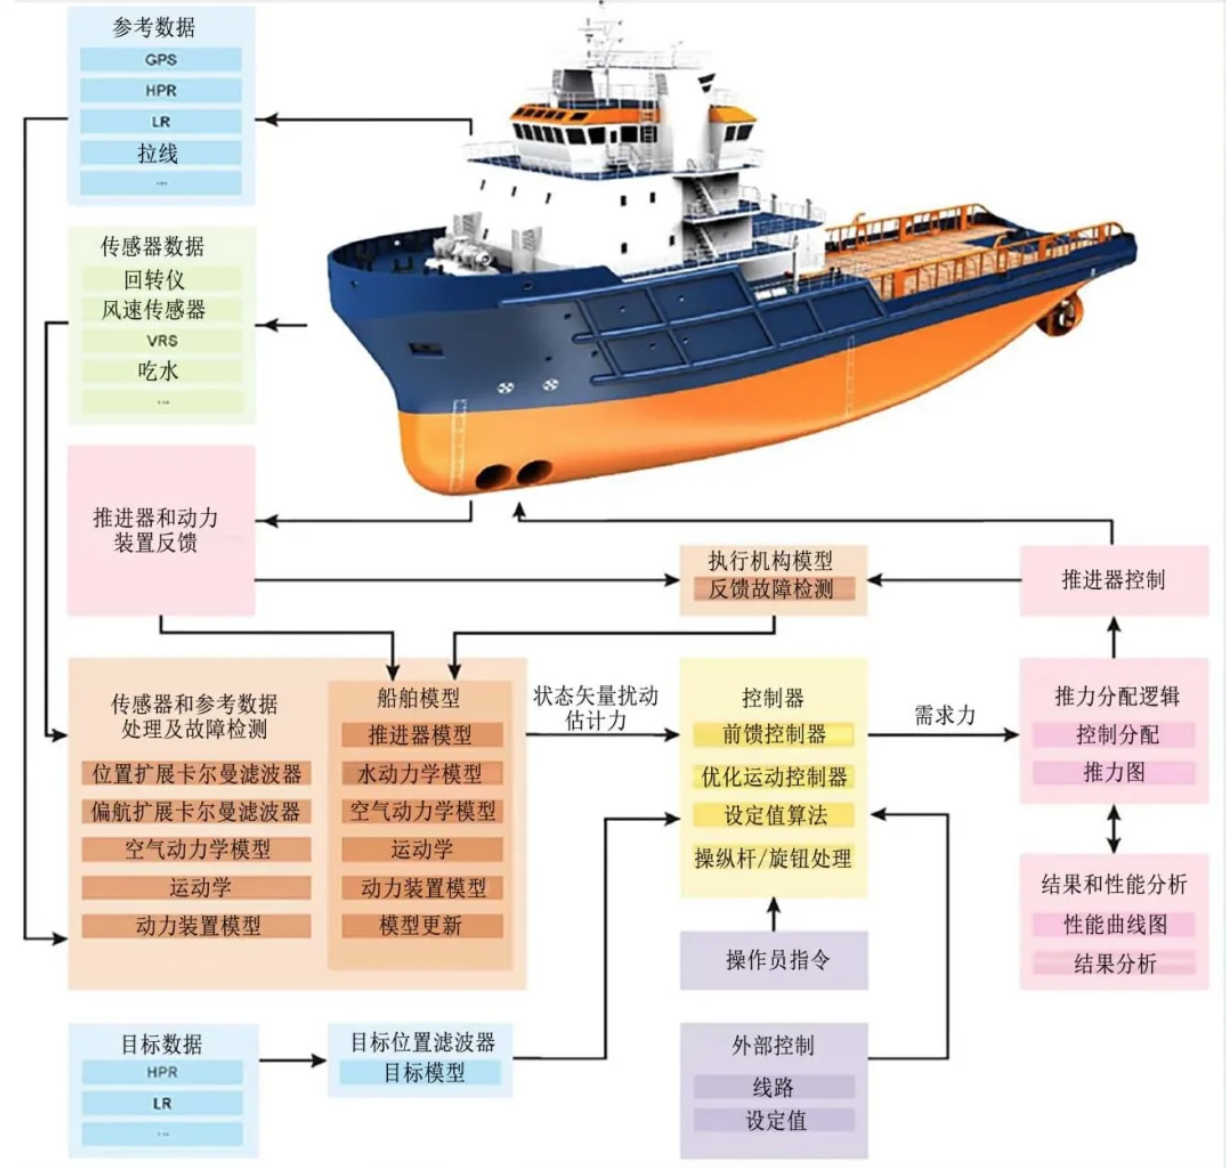 中国船舶七〇四所国产化dp系统获得中国船